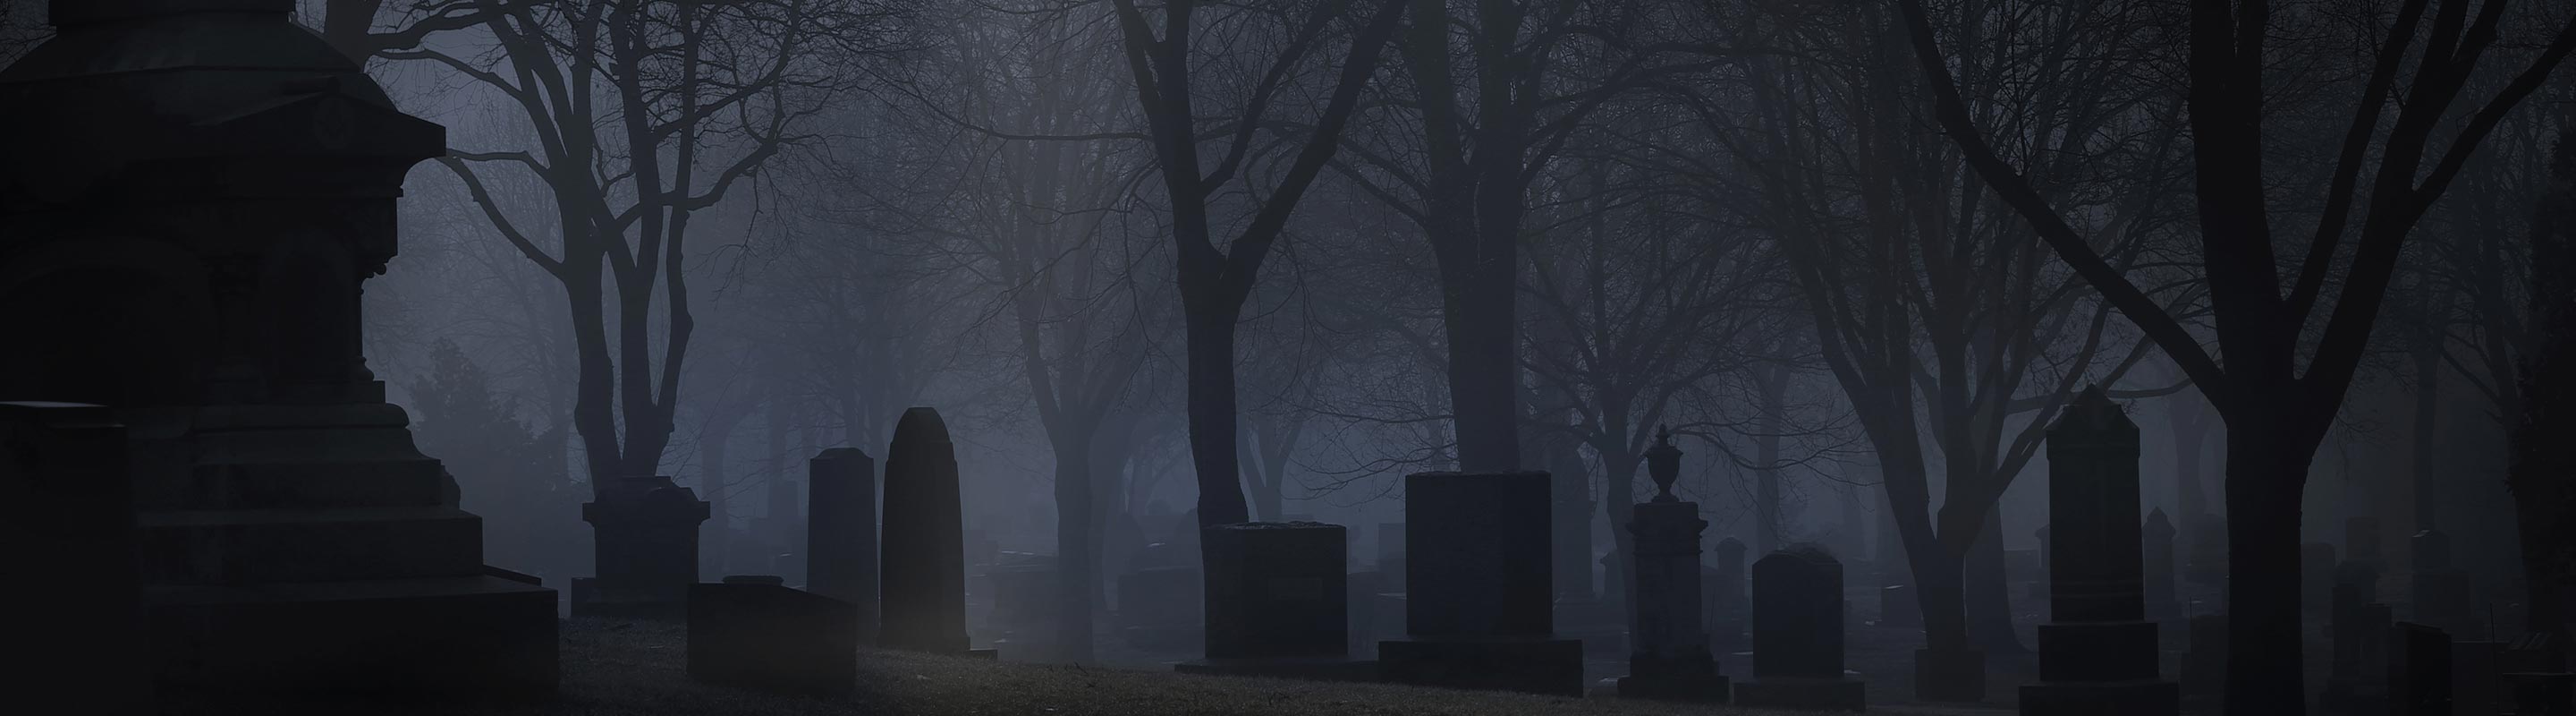 Uno de los cementerios embrujados que visitamos en nuestros Tours grupales de fantasmas